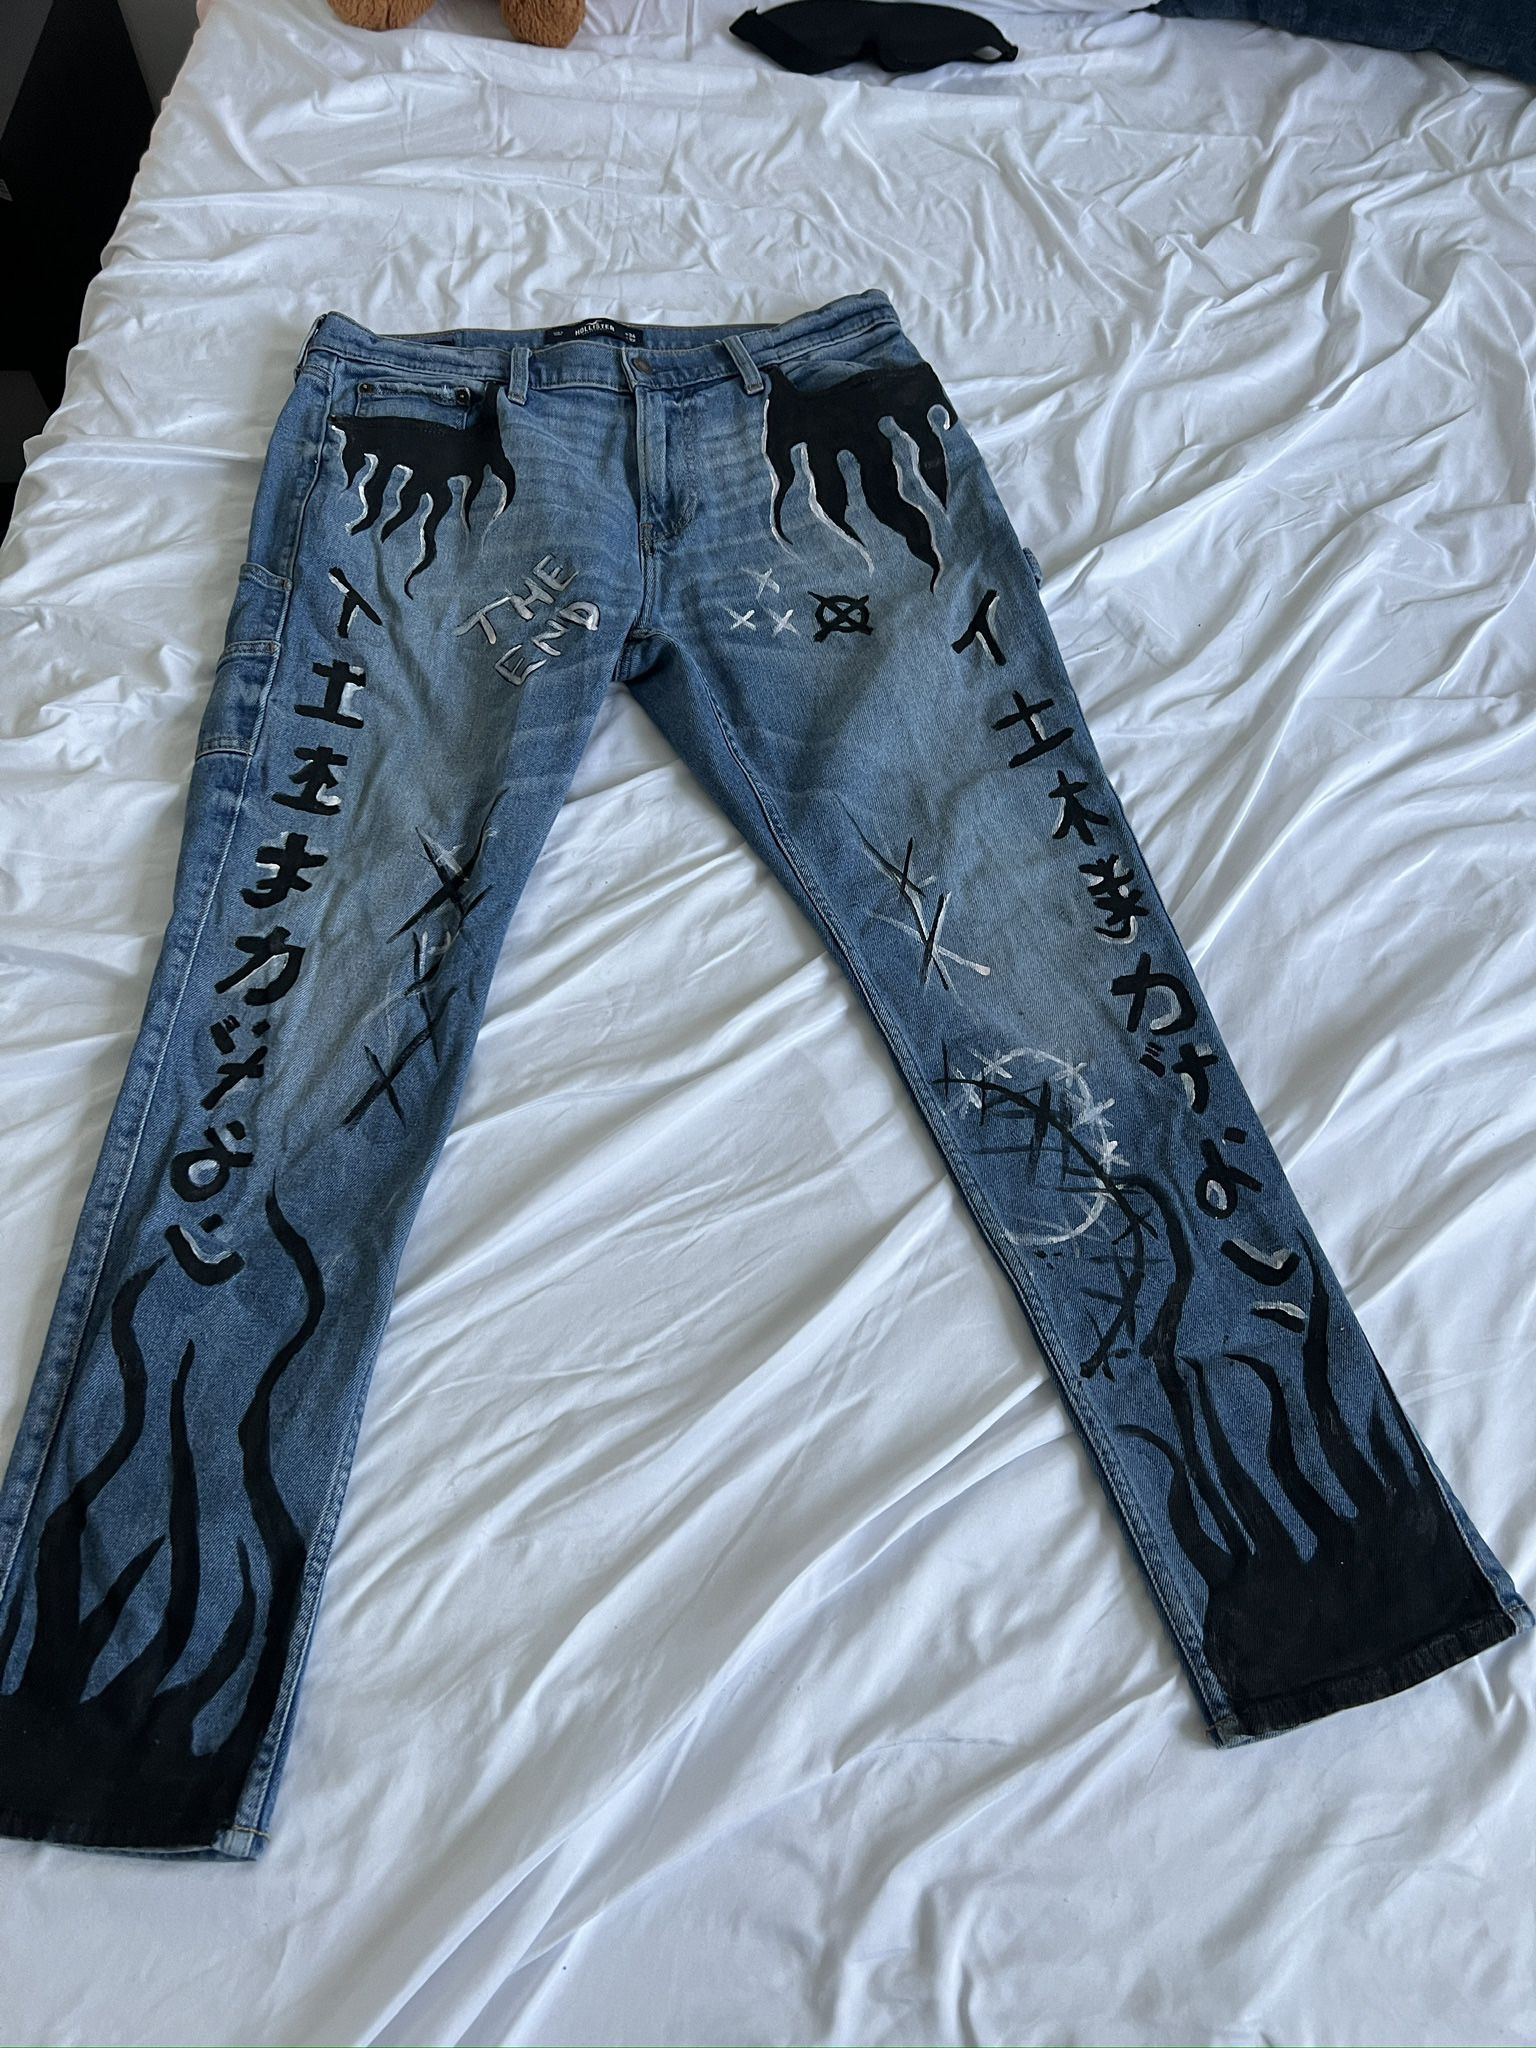 Vintage Painted Denim Jeans, Dad Jeans Size 34 X 32